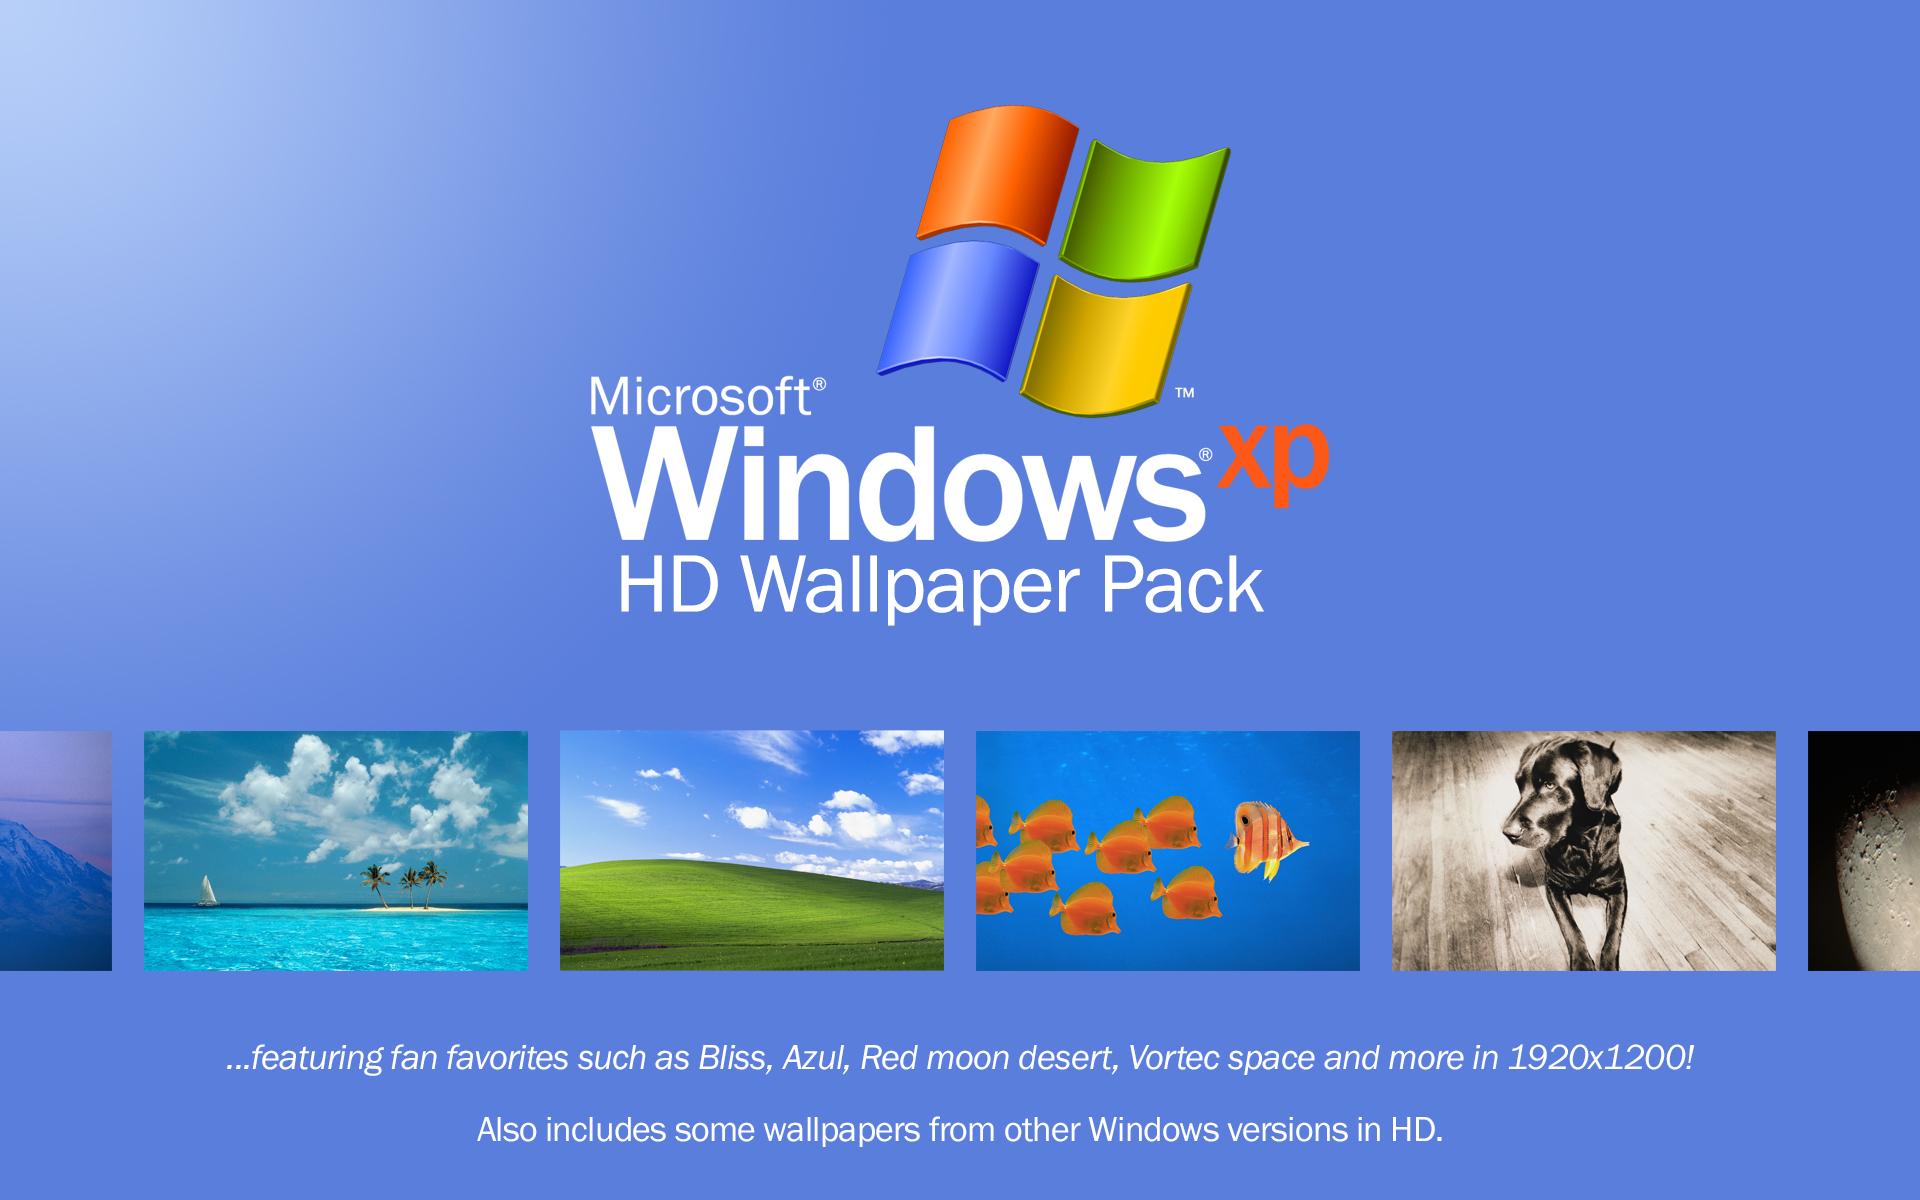 Windows XP wallpaper: Với những gương mặt quen thuộc như trò chơi Solitaire và Blue Screen of Death, Windows XP đã trở thành một phần của nền văn hóa. Hãy xem hình nền đáng yêu này để tìm lại ký ức về một thời đại của máy tính.